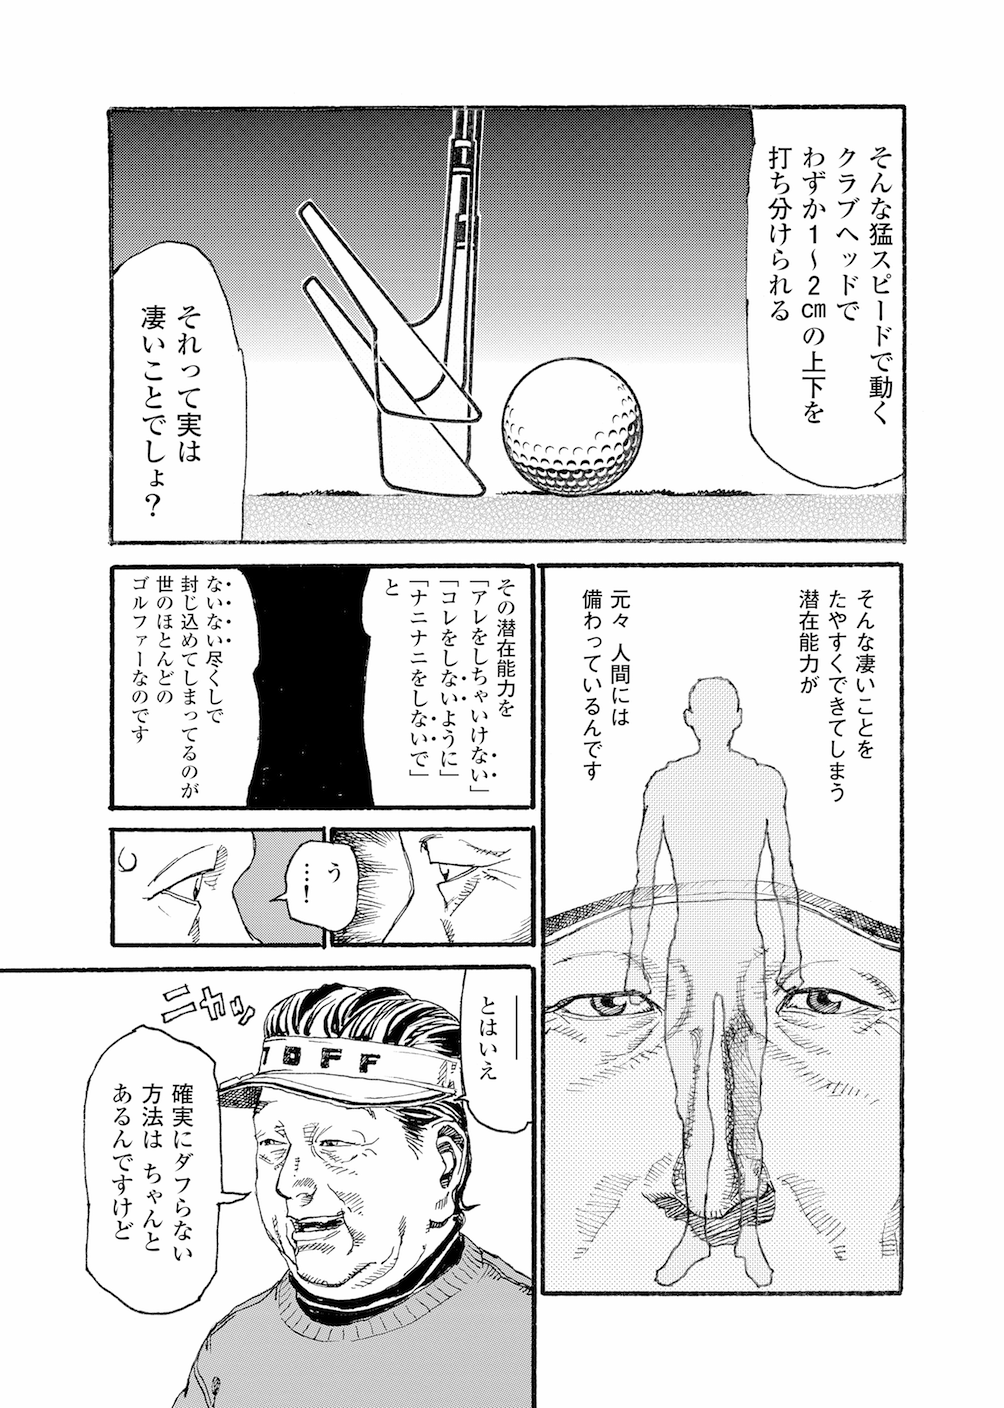 第1話 「人間の潜在能力」 - 無料で読めるゴルフレッスンコミックWEB | 日本文芸社